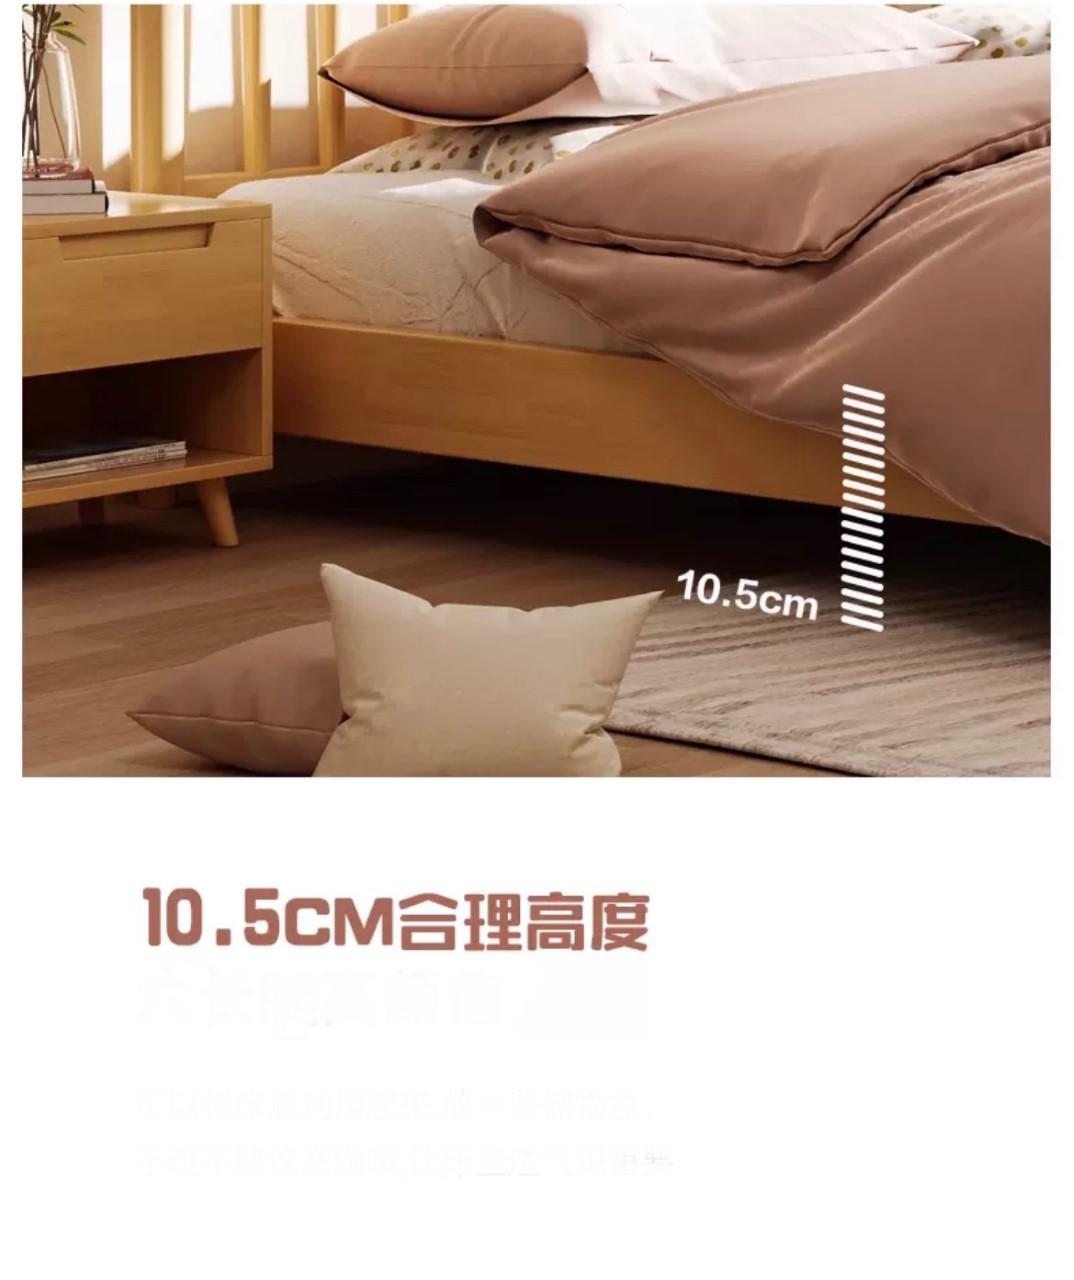 日式實木橡木雙人床*5呎/6呎(不包床褥) (IS7564)